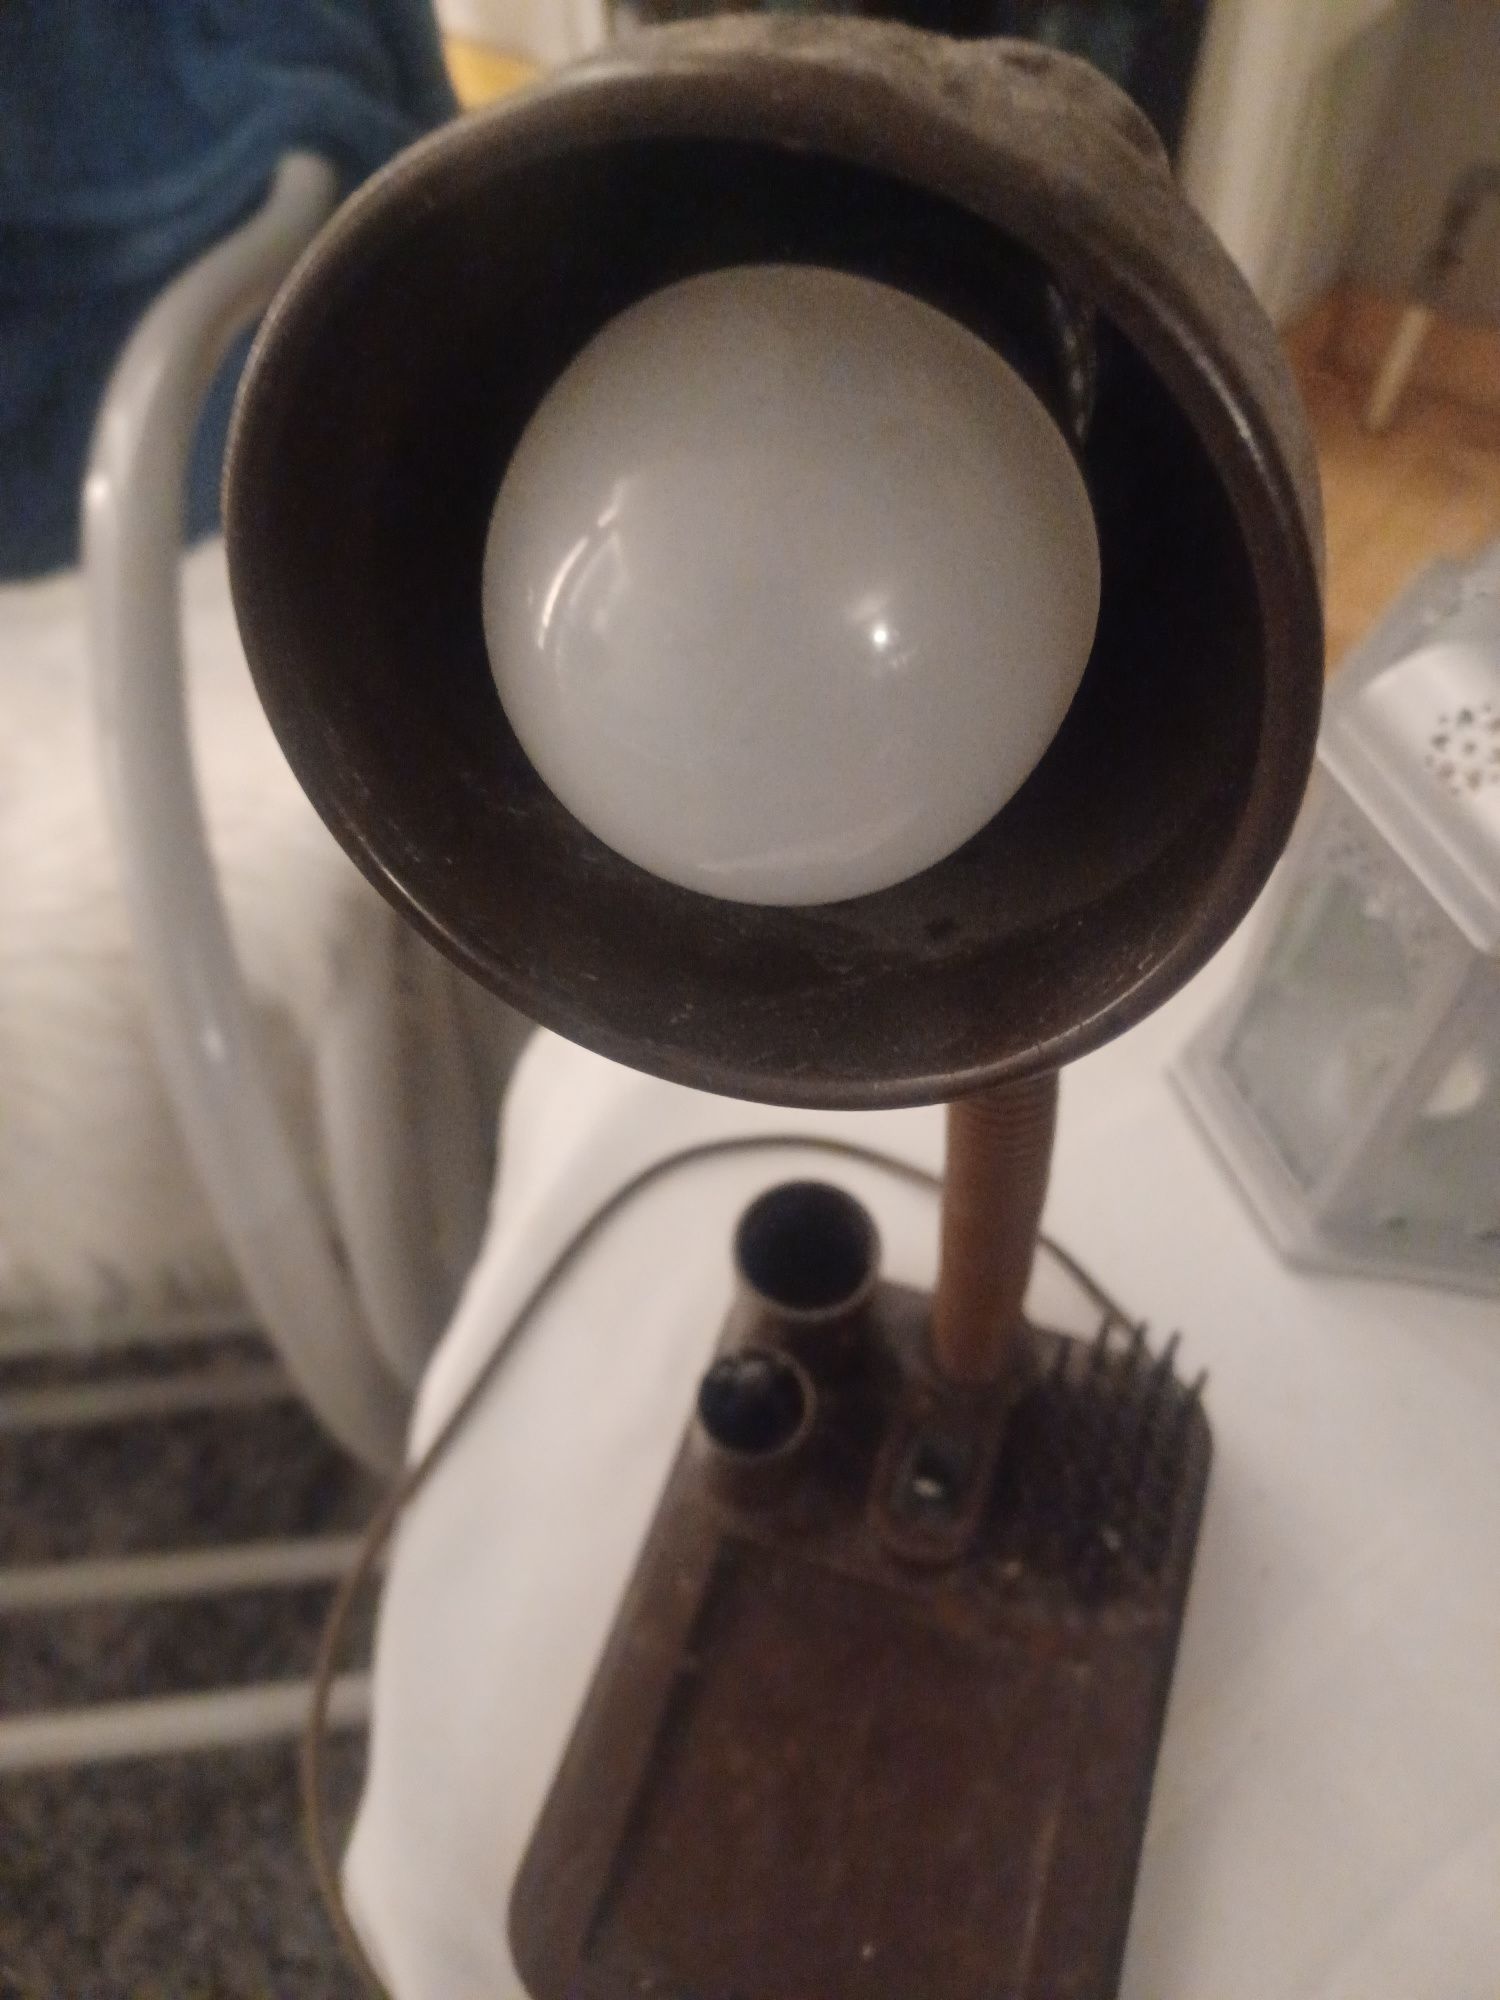 Lampka na biurko z jeżykiem i pojemnikiem na pisaki itp